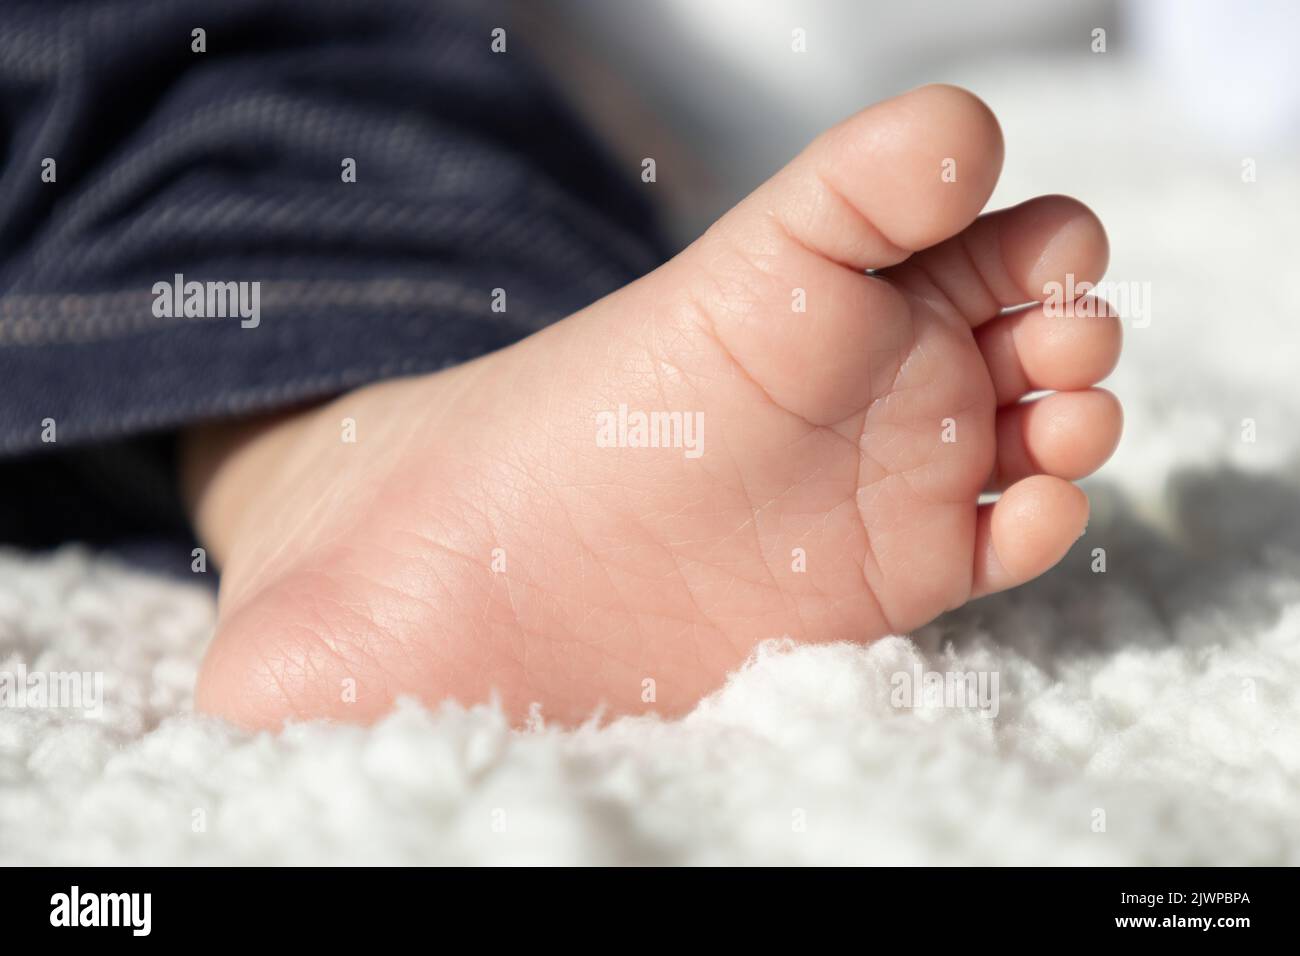 Fußsohle eines Babys im Studio, Details der Haut, Finger eines neuen Familienmitglieds, Körperteile, Konzept der Unschuld und Kindheit Stockfoto